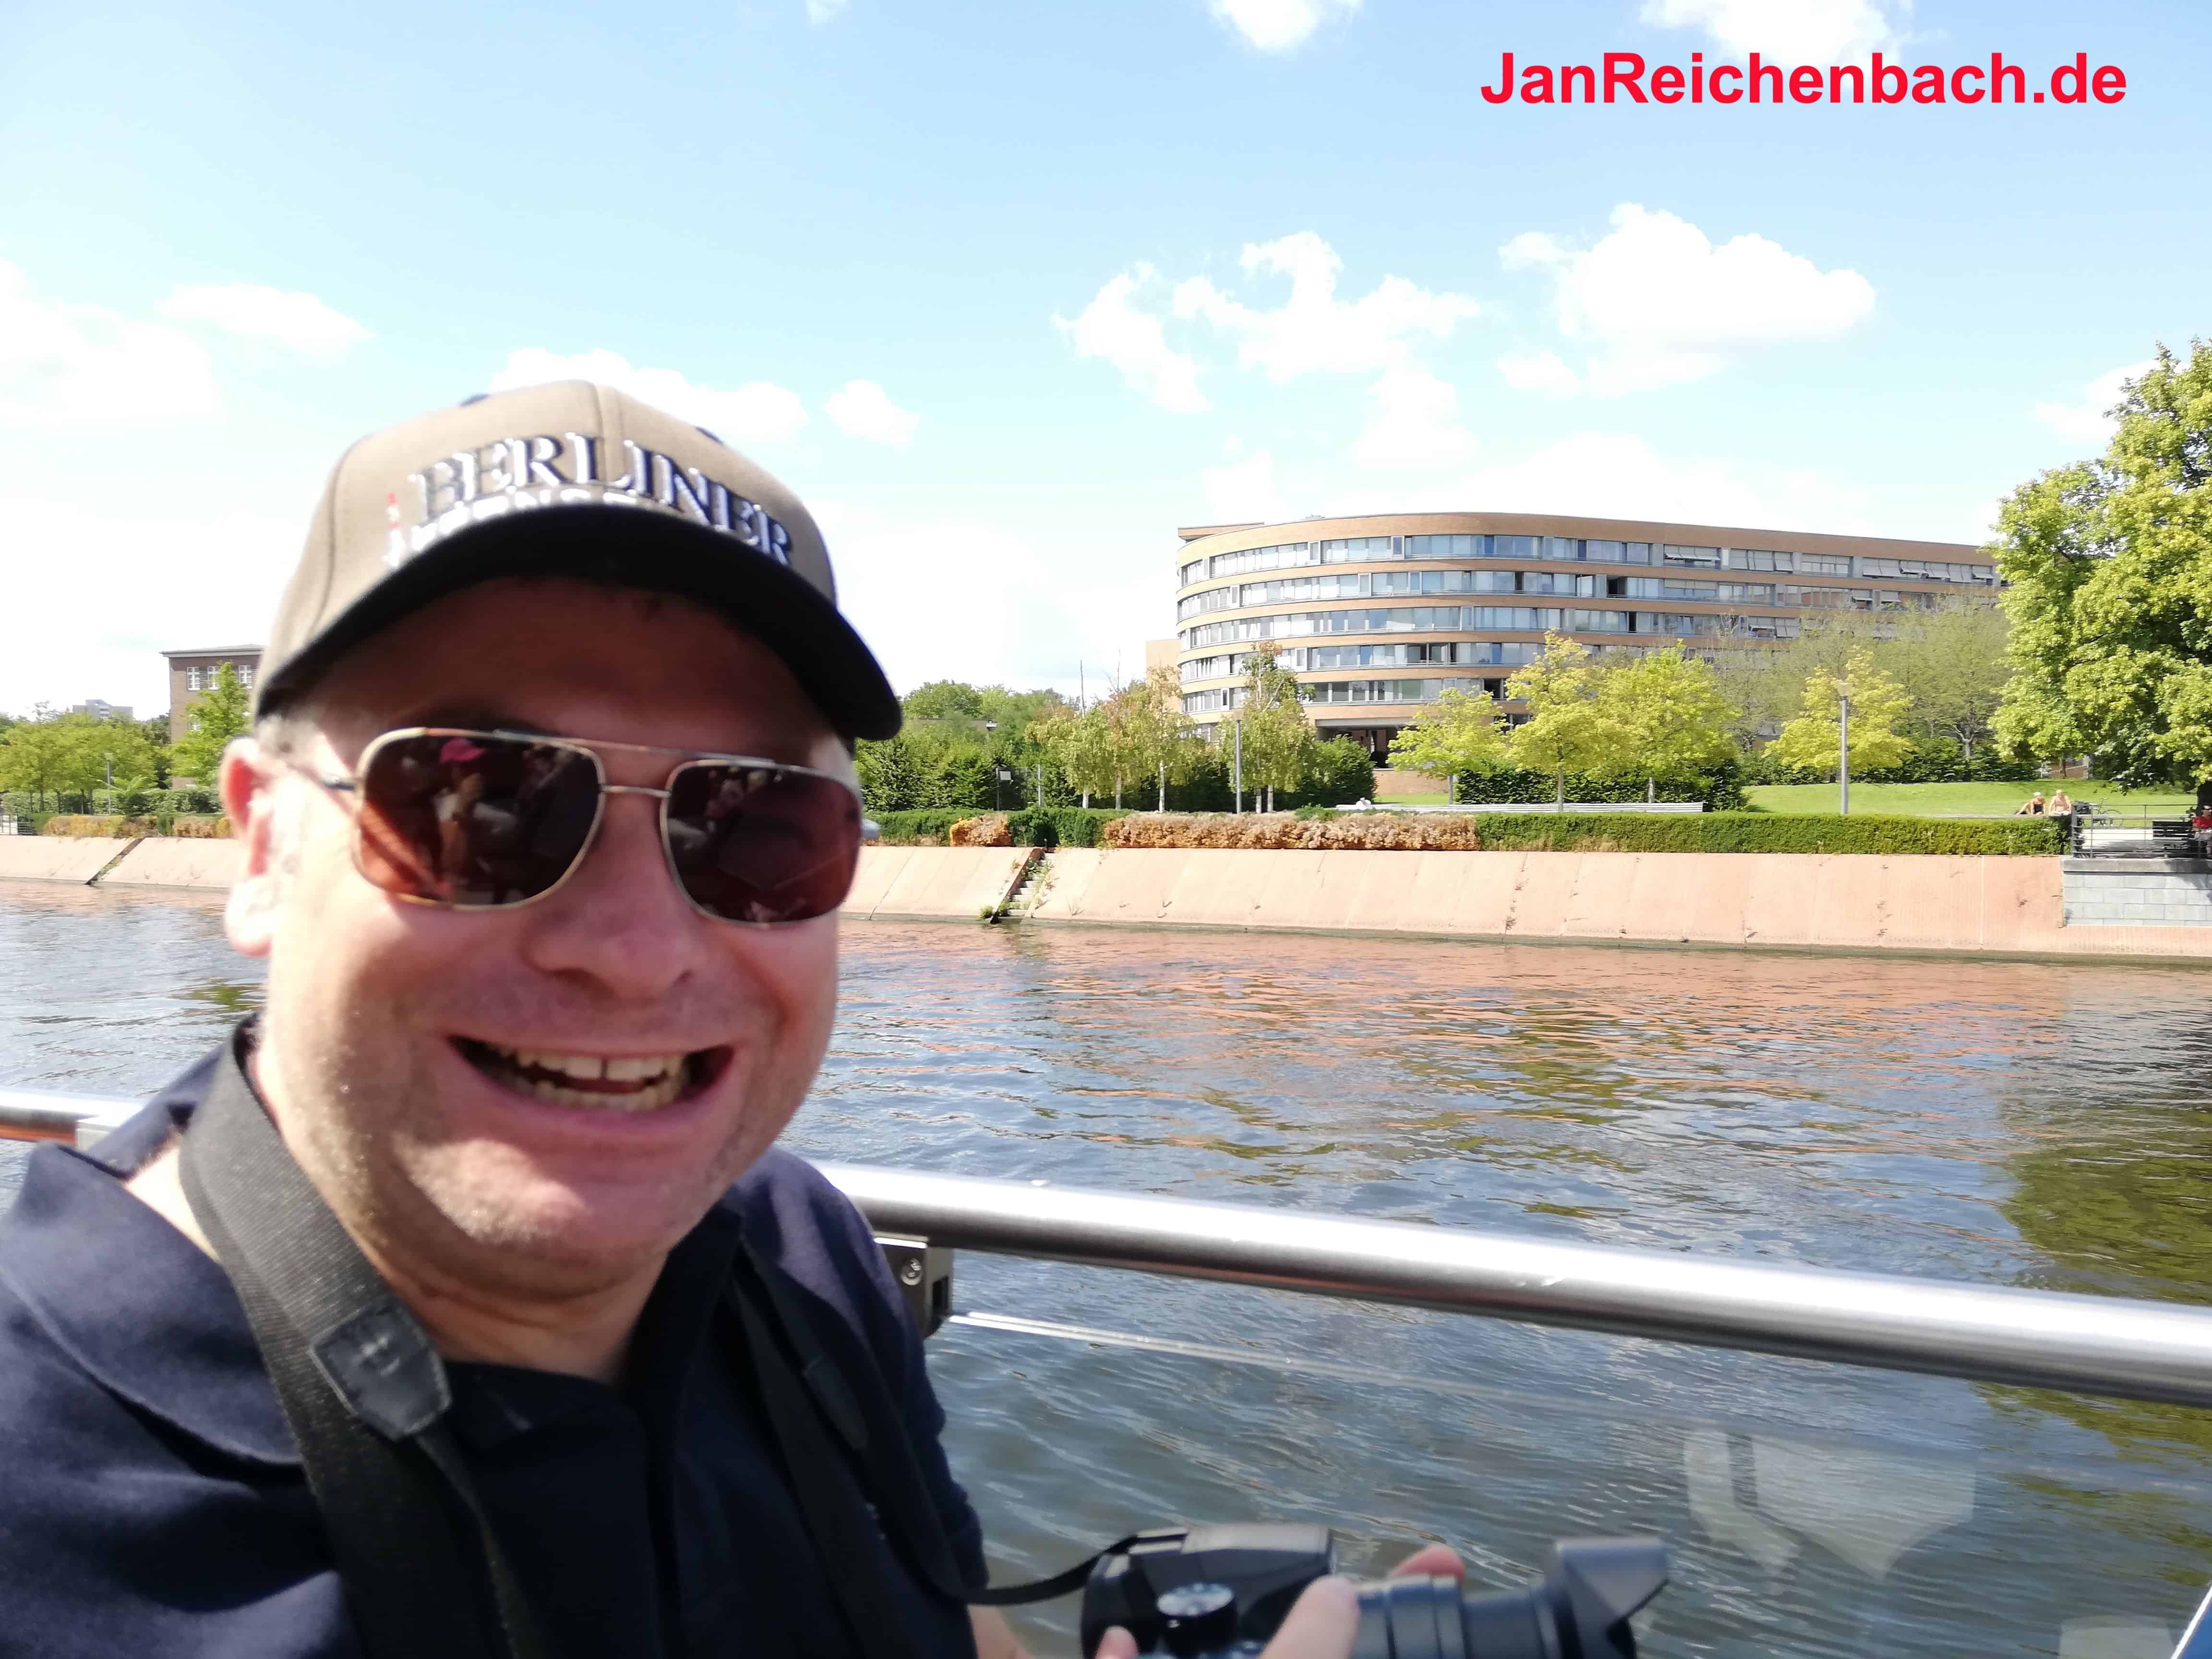 JanReichenbach.de - Sightseeing und Deutsche Turnmeisterschaften in Berlin